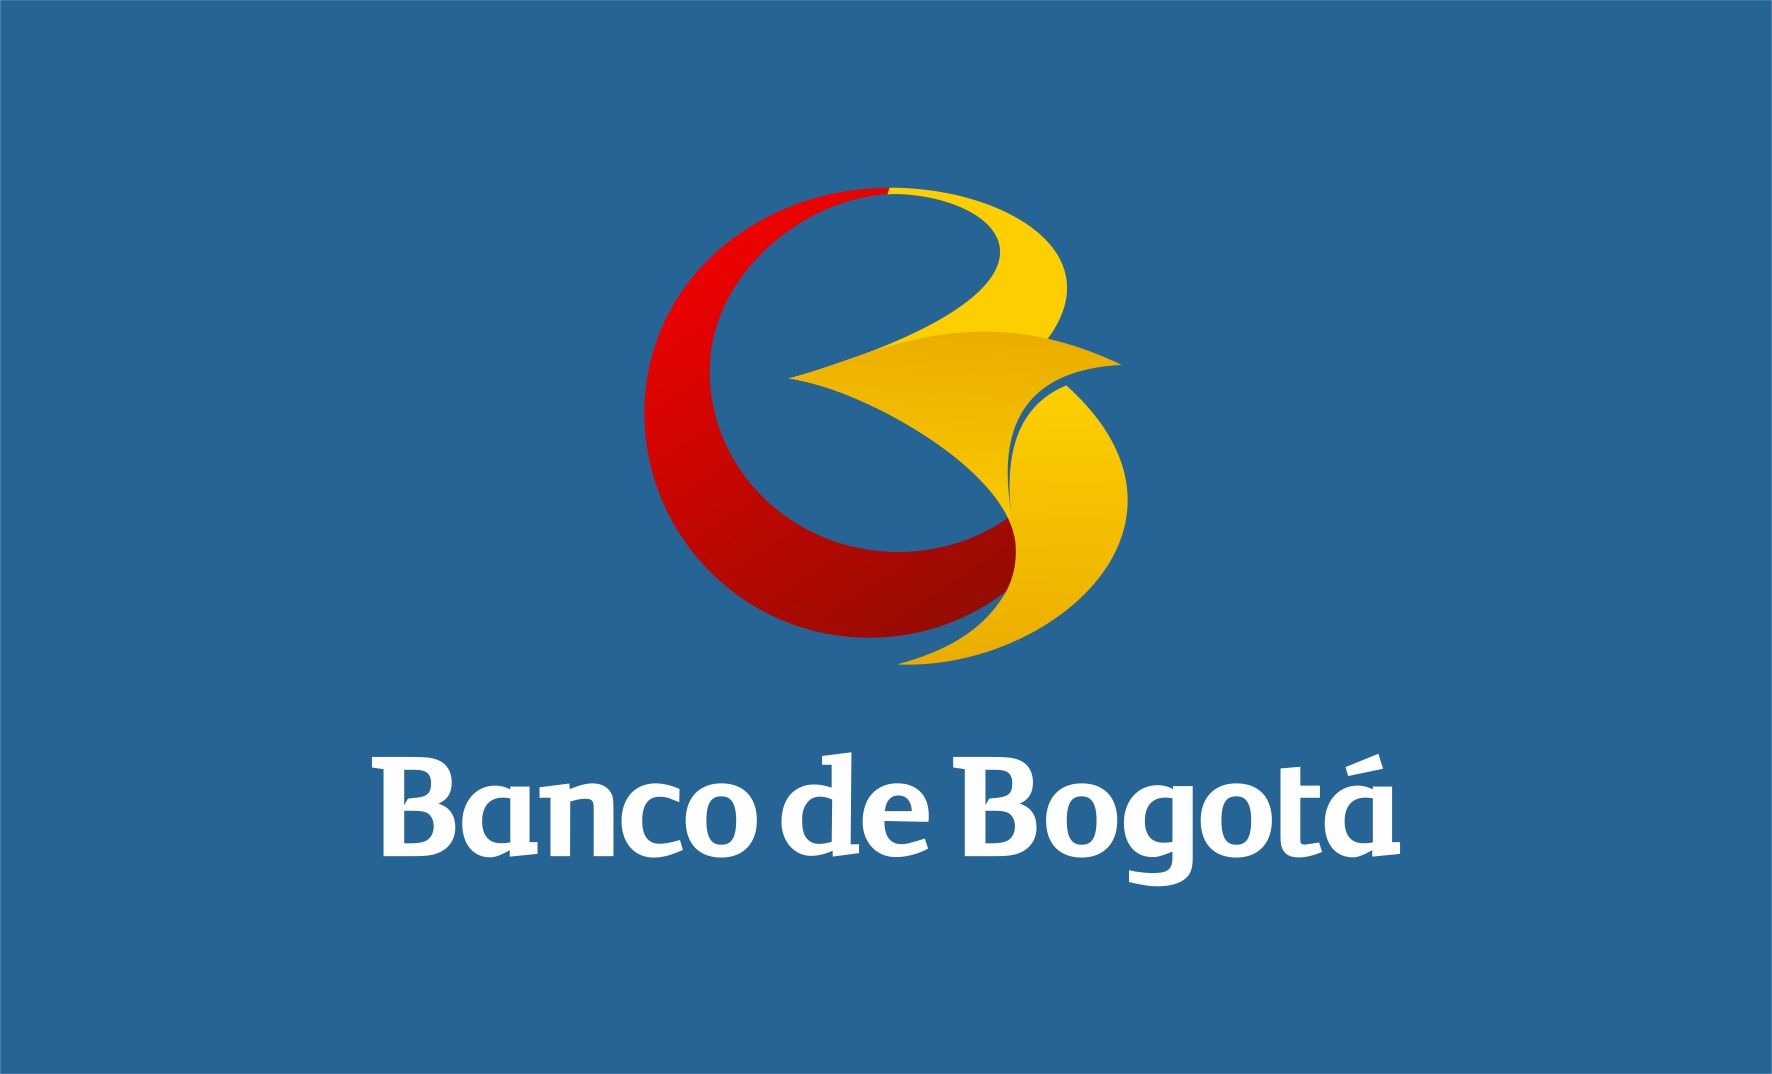 Banco De Bogota Brand Logo